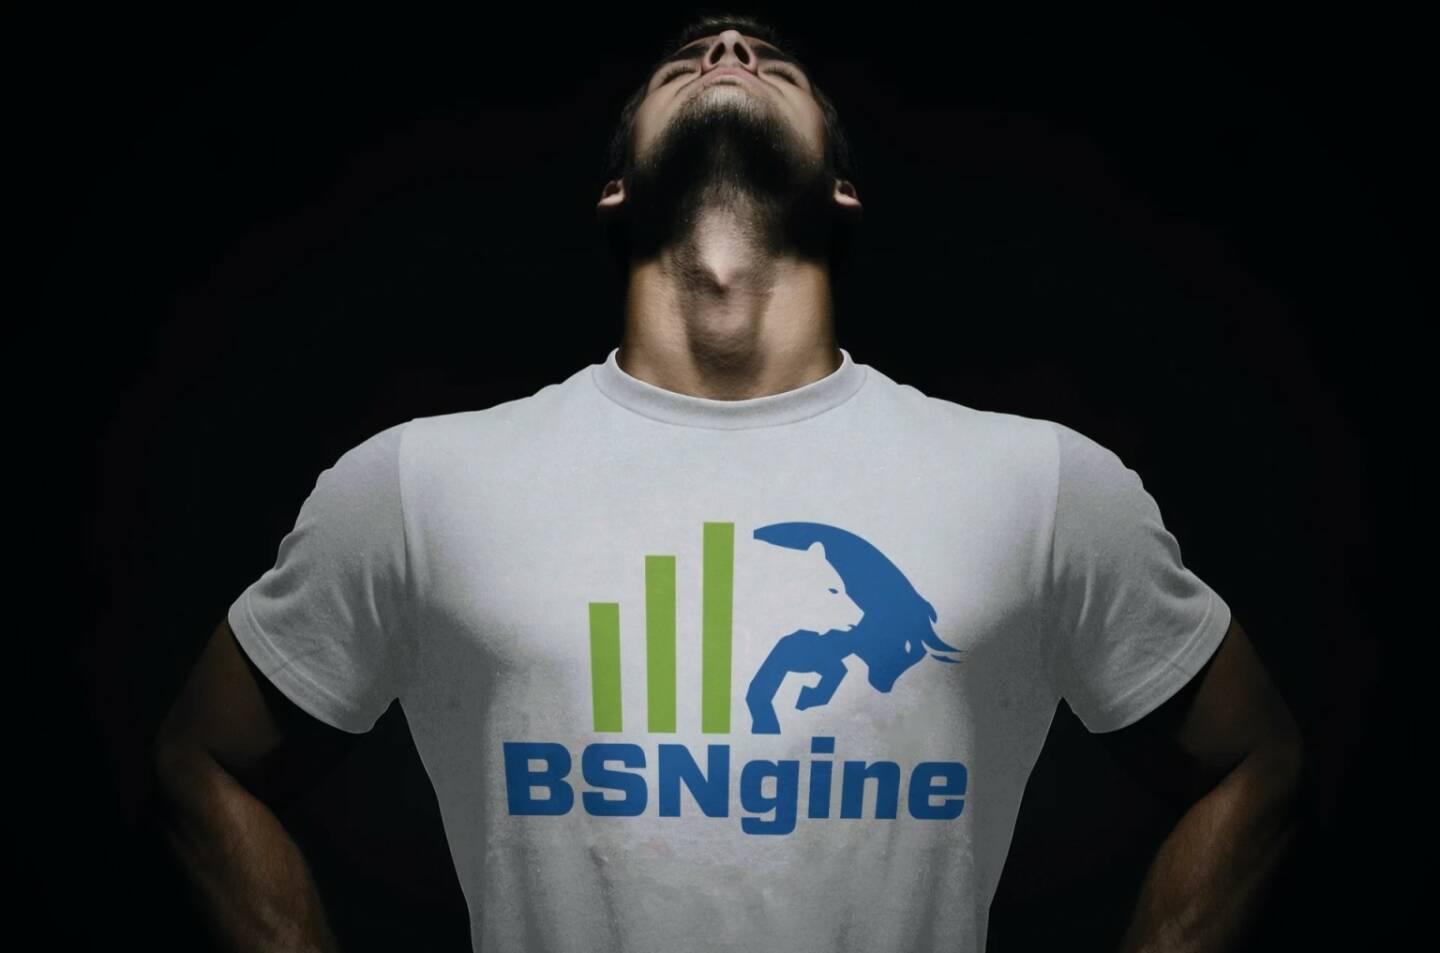 BSNgine, man, T-shirt, muscles